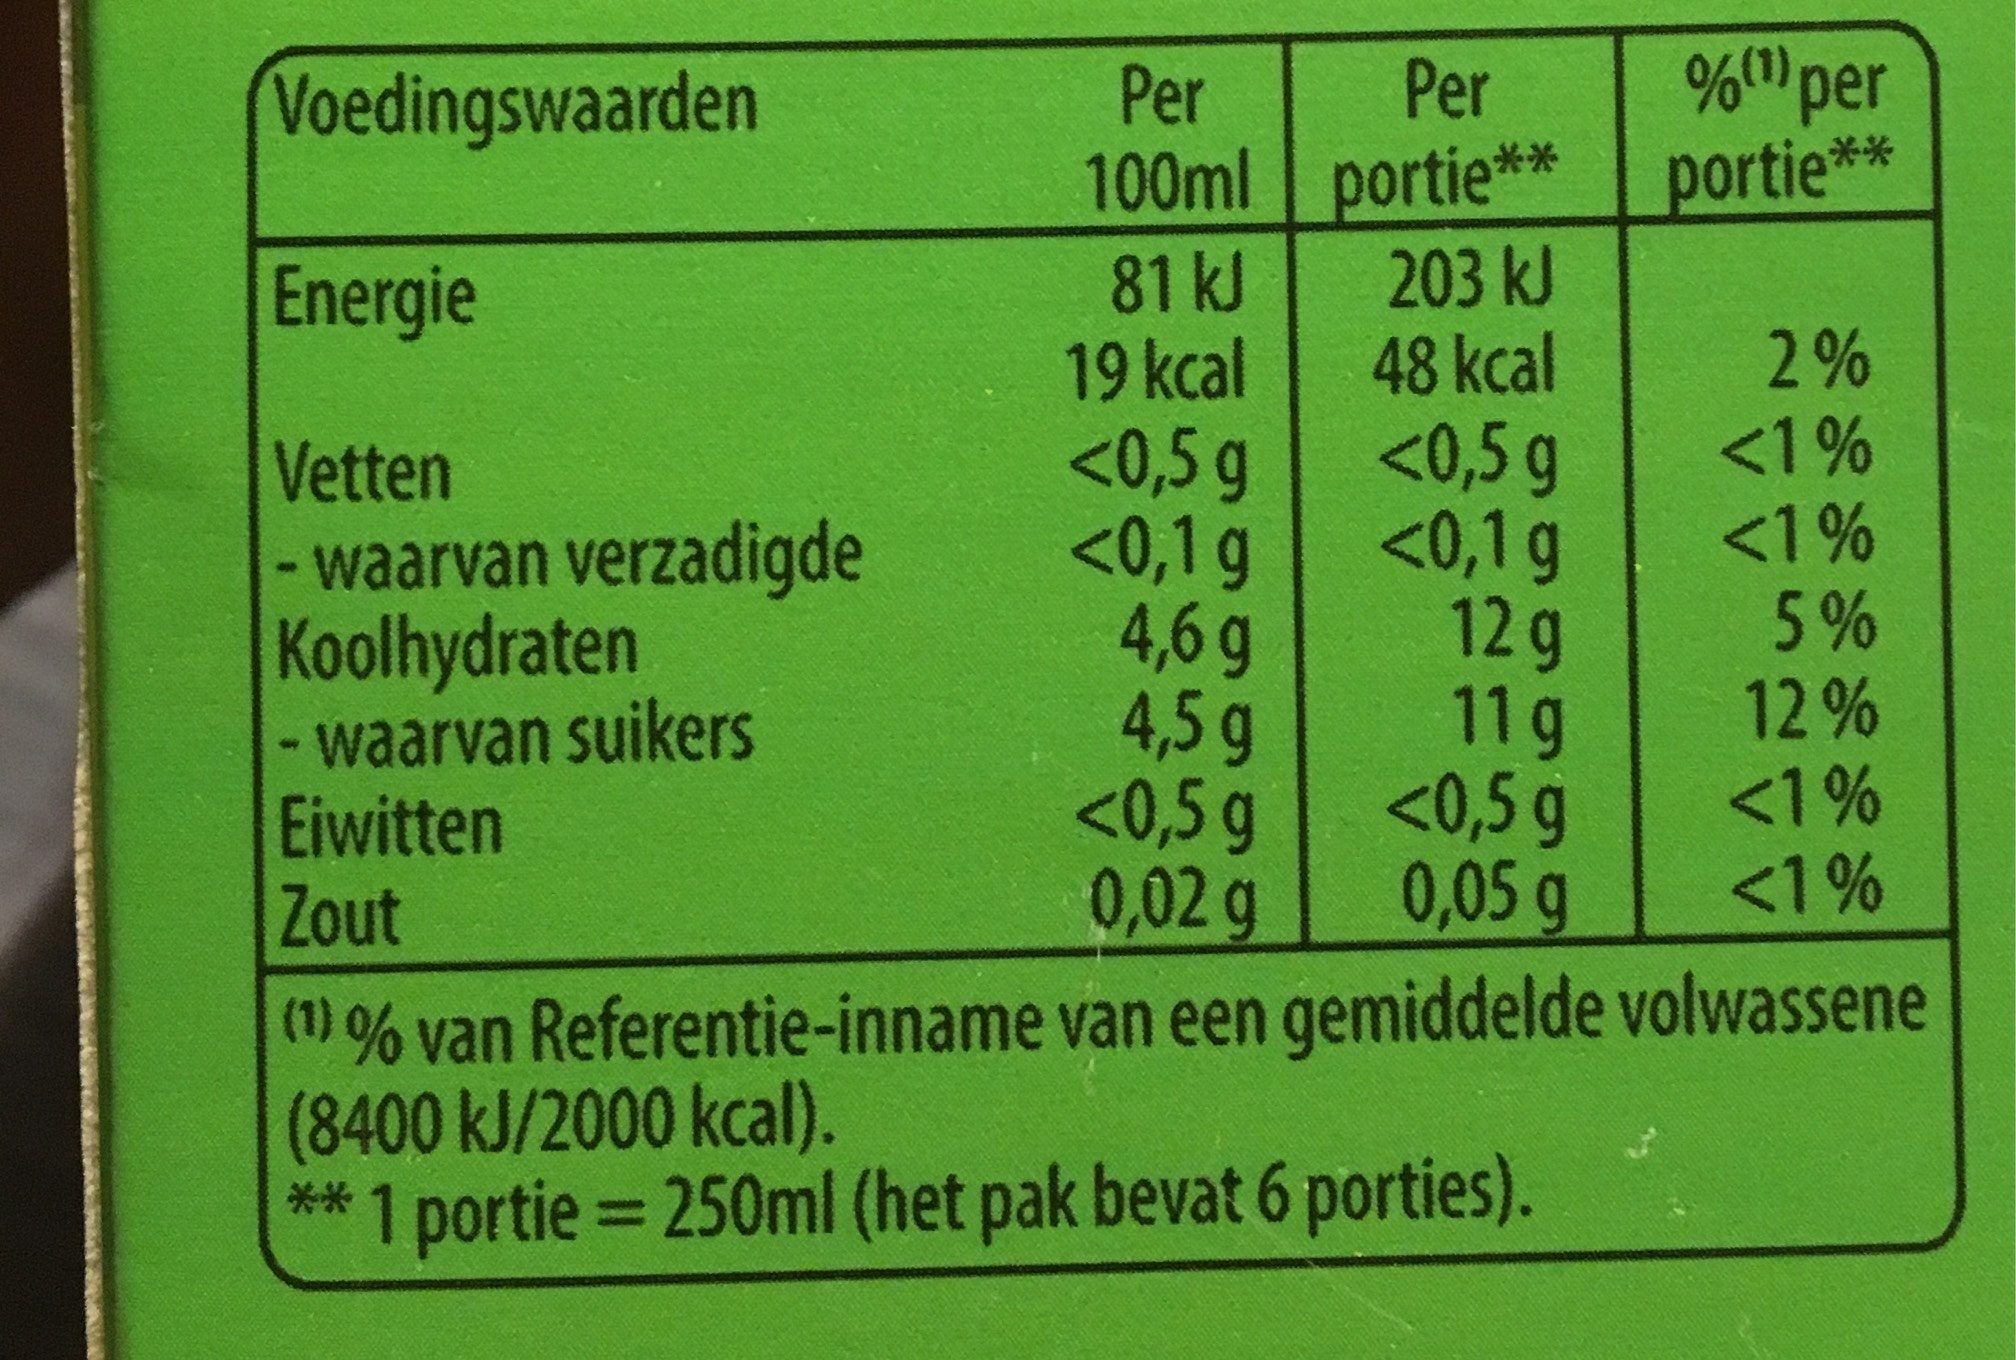 Lipton Ice Tea Jasmin Lychee Carton 1,5LTR - Nutrition facts - nl